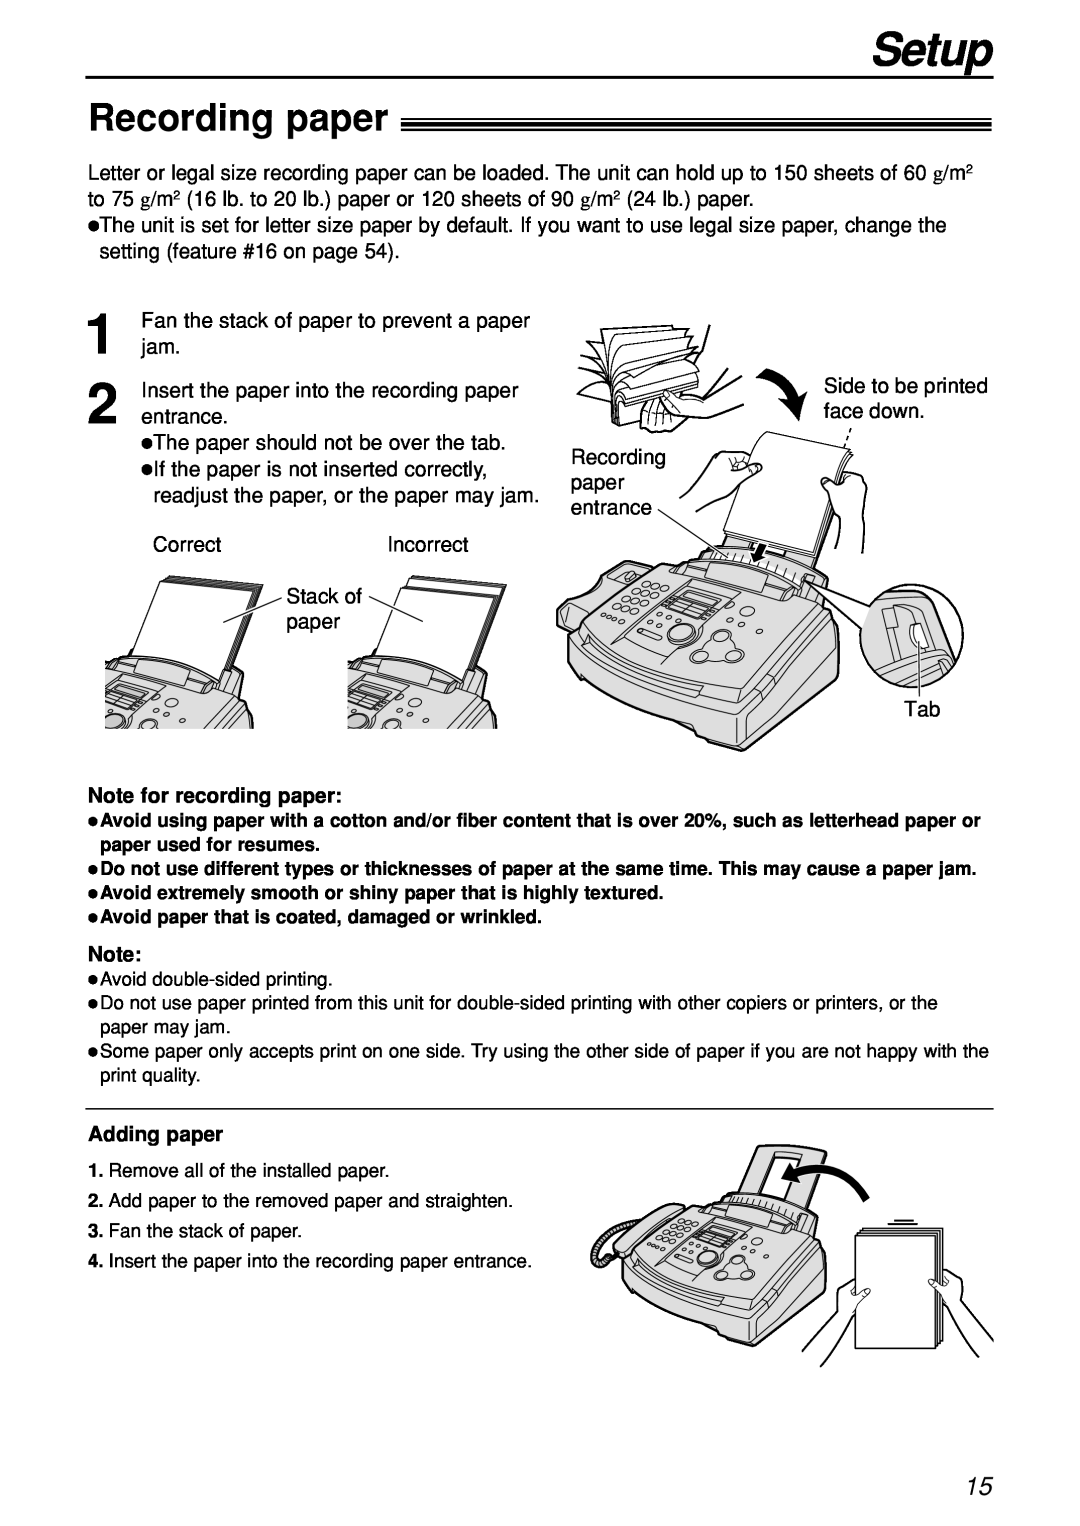 Panasonic KX-FL501C manual Recording paper, Setup, Note for recording paper, Adding paper 